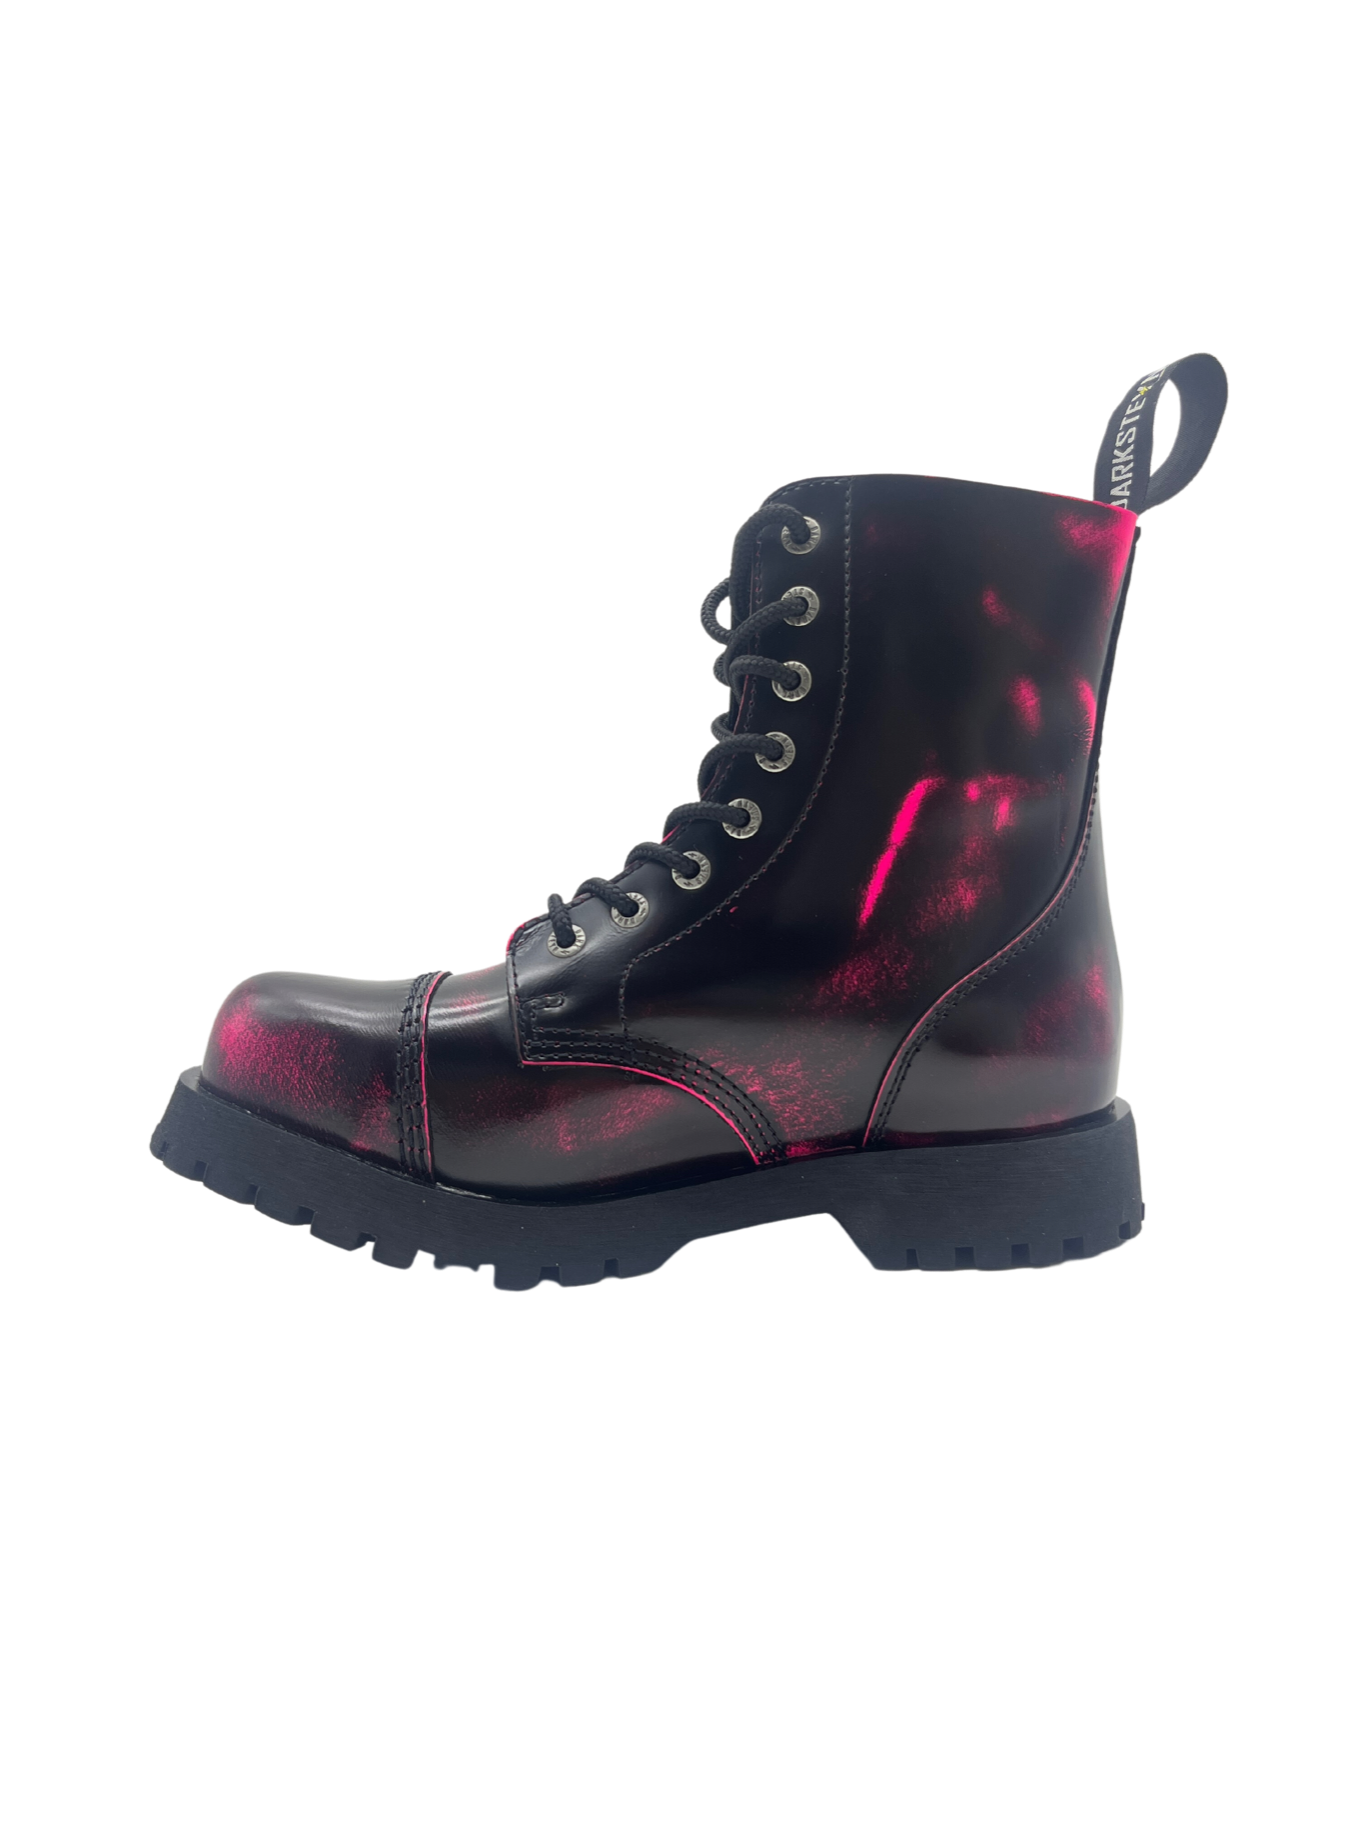 Darksteyn Stiefel Schuhe 8 Eye Ranger Premium Boots Pink Rosa